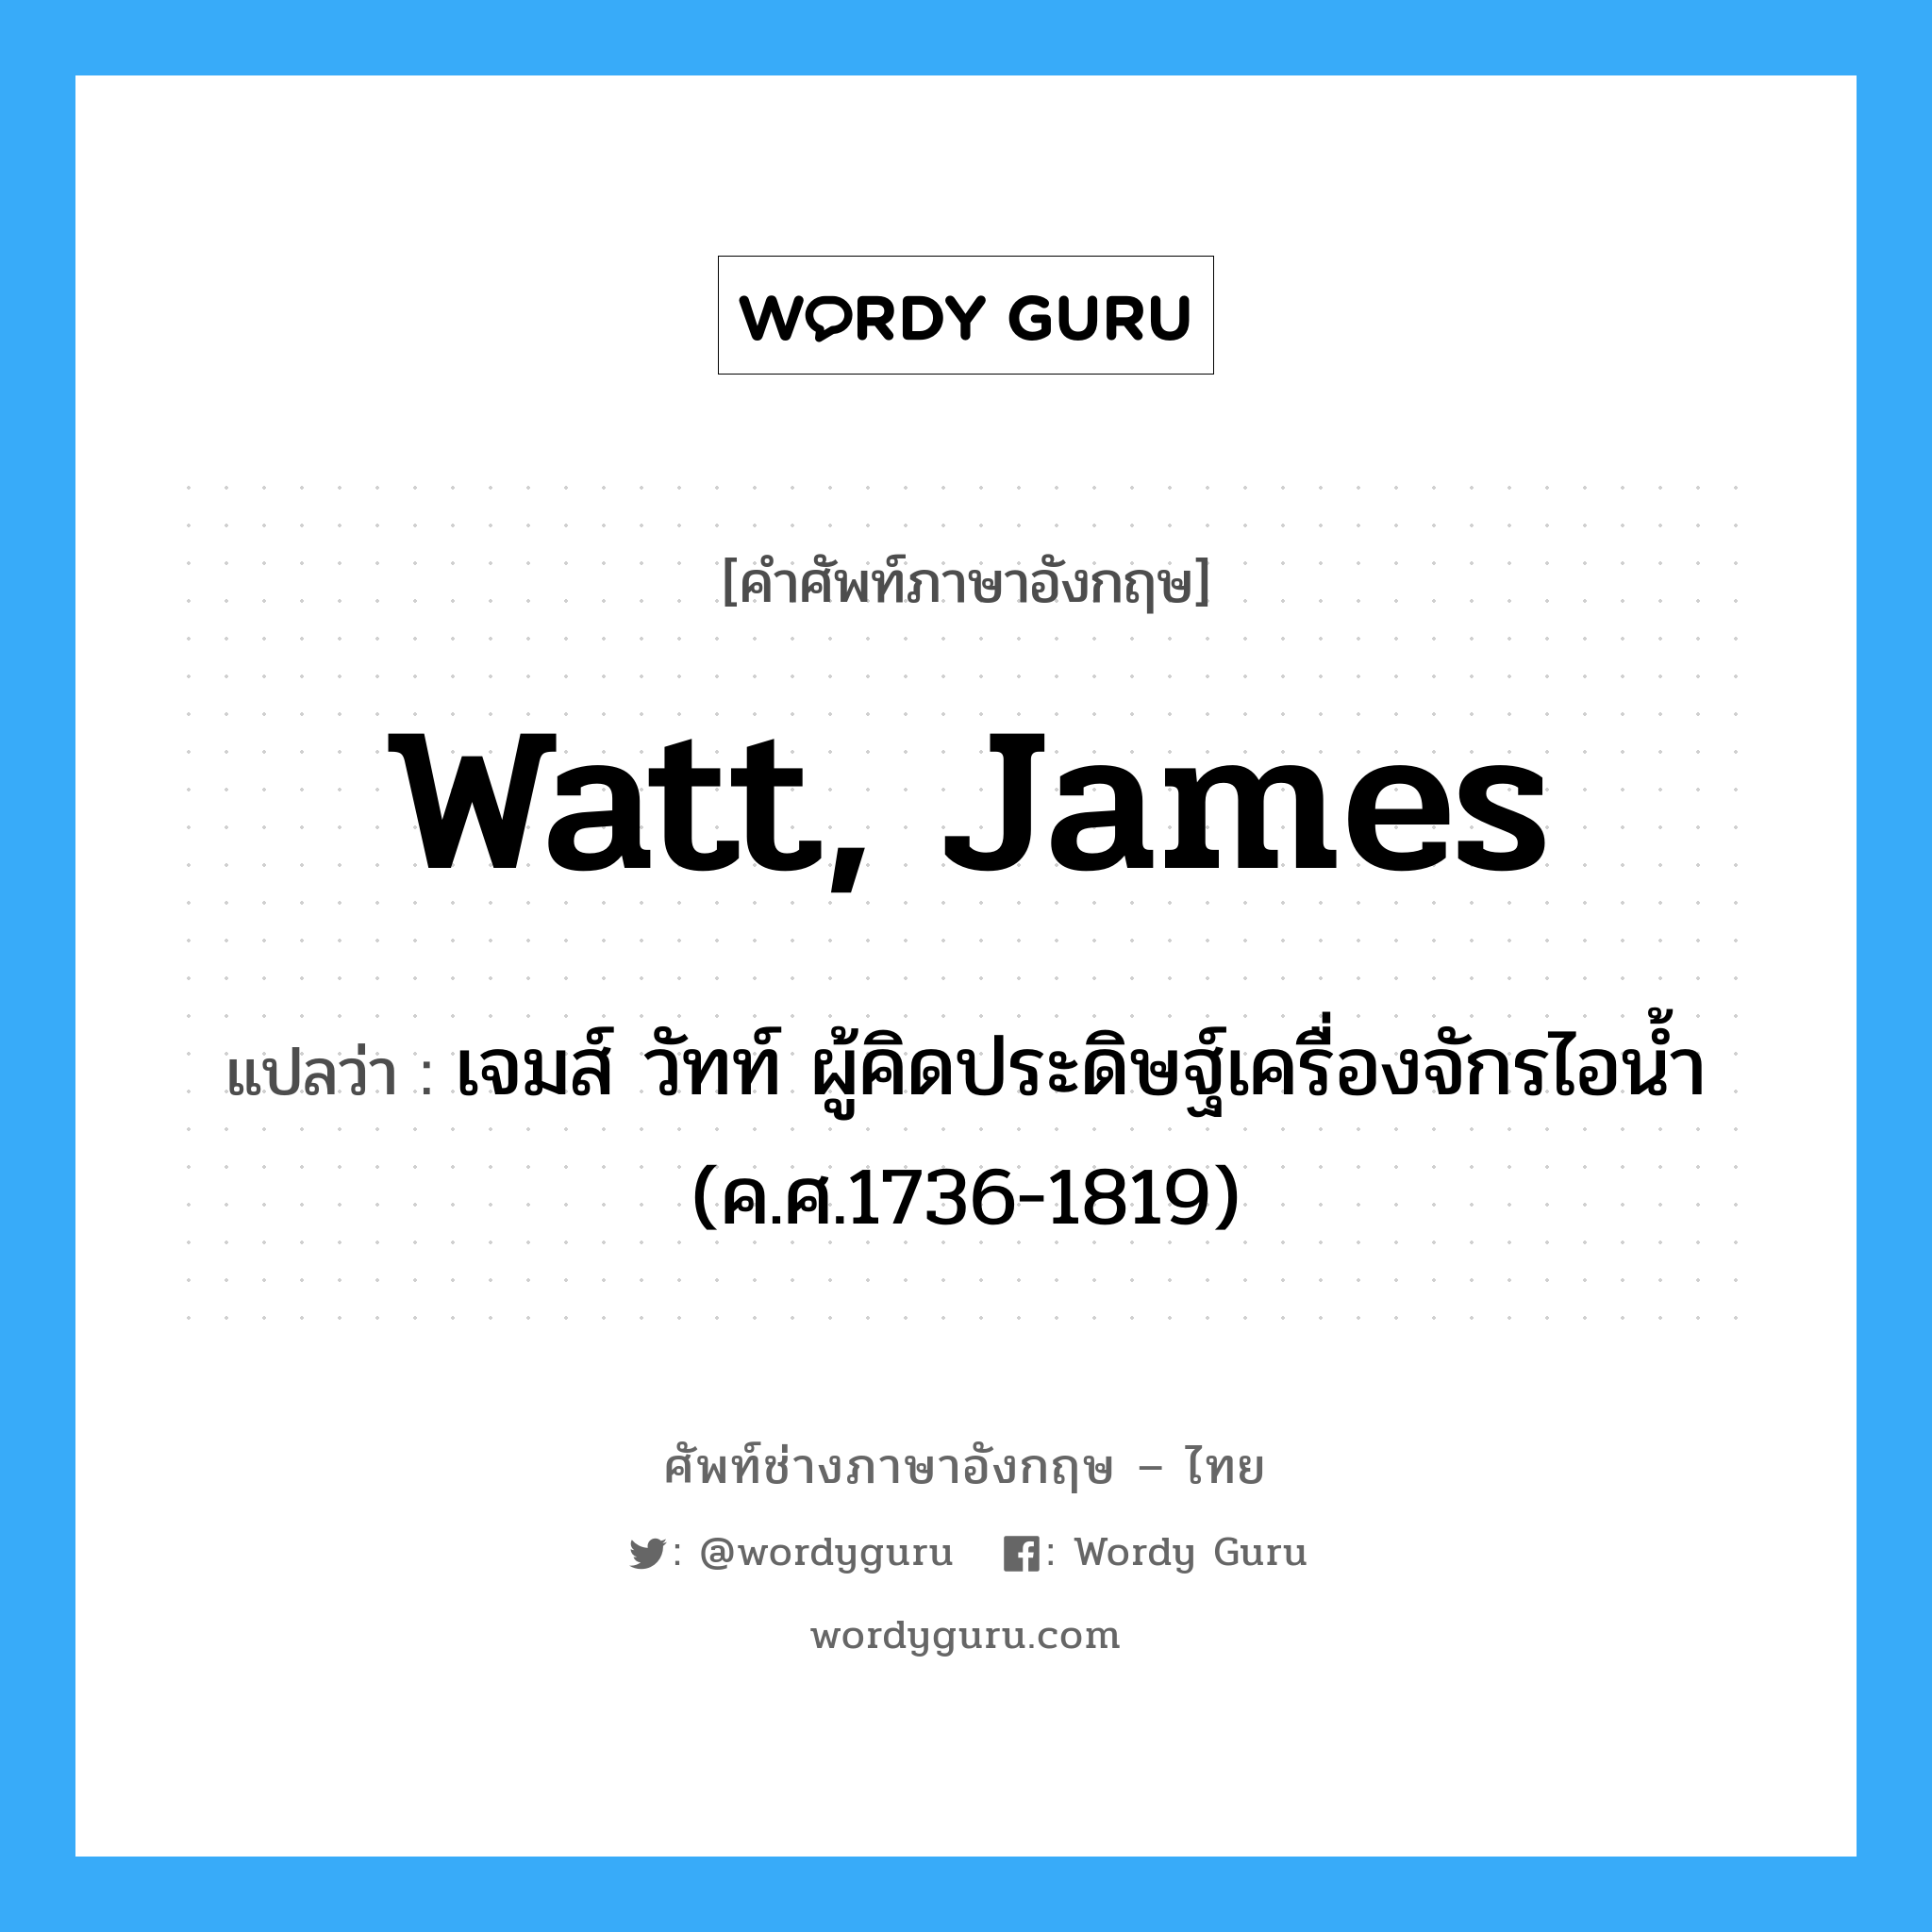 Watt, James แปลว่า?, คำศัพท์ช่างภาษาอังกฤษ - ไทย Watt, James คำศัพท์ภาษาอังกฤษ Watt, James แปลว่า เจมส์ วัทท์ ผู้คิดประดิษฐ์เครื่องจักรไอน้ำ (ค.ศ.1736-1819)